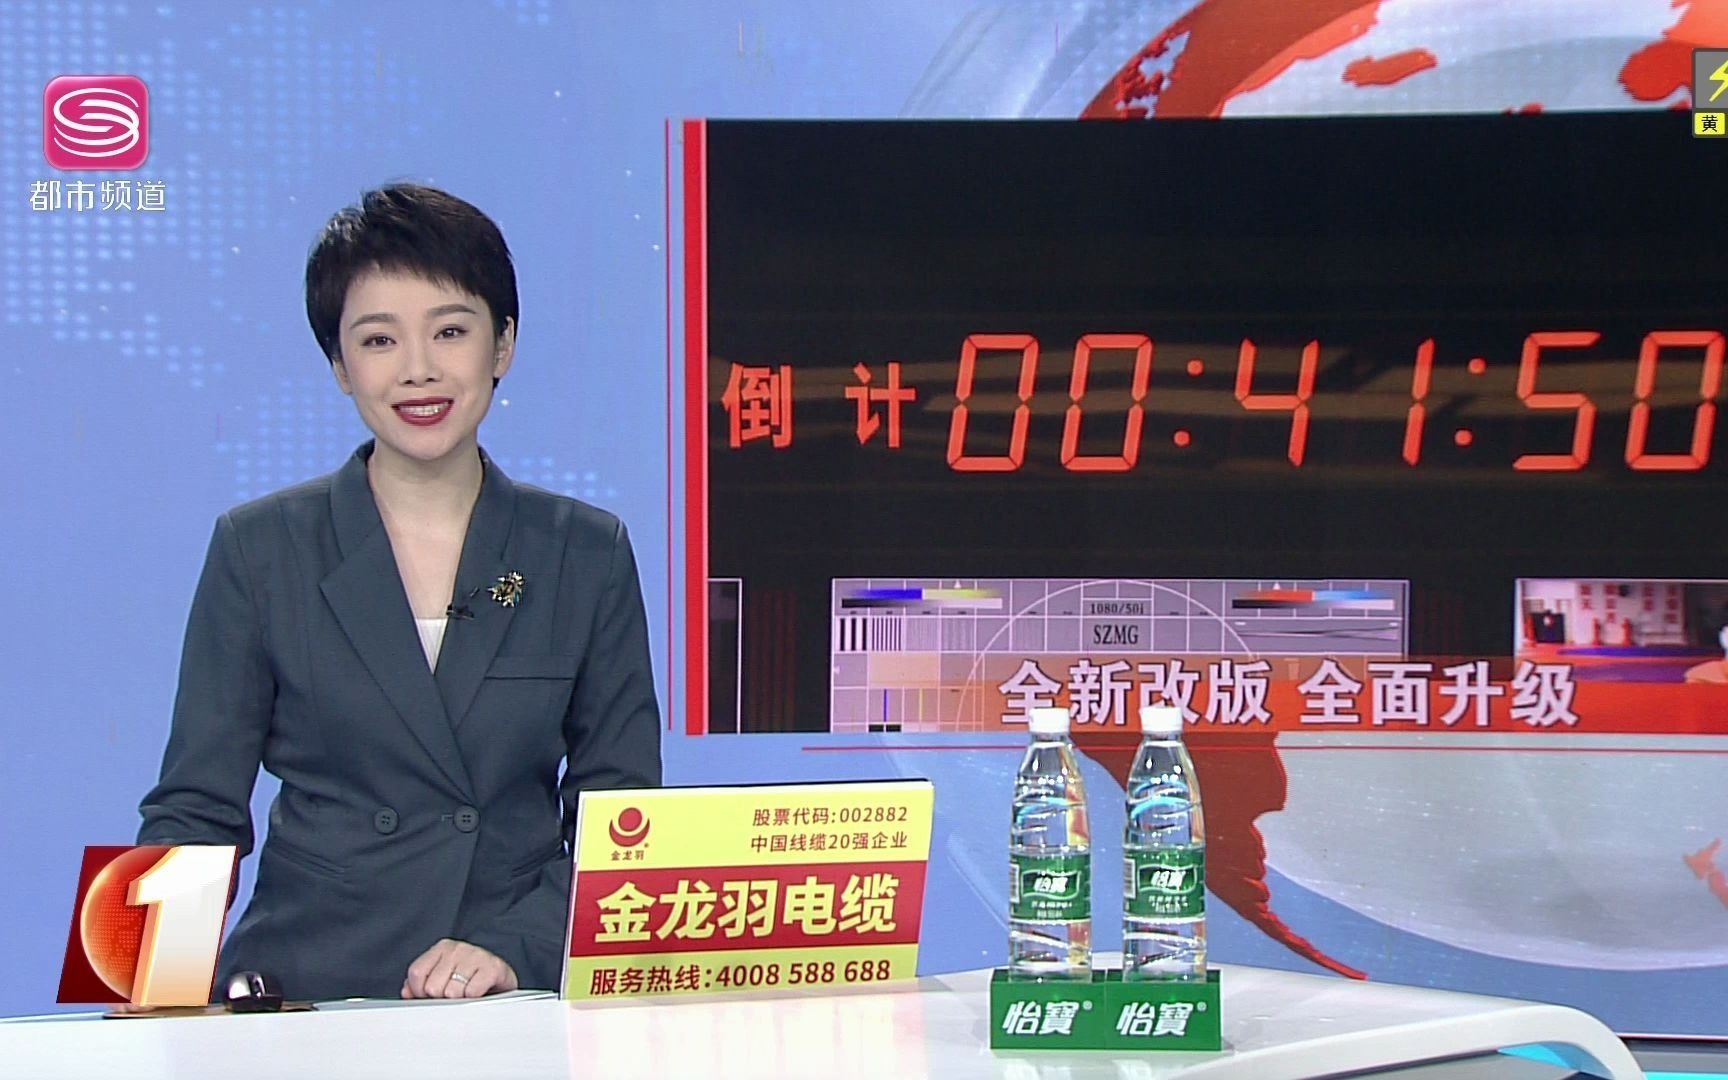 第一现场深圳都市频道改版升级相关的新闻202181